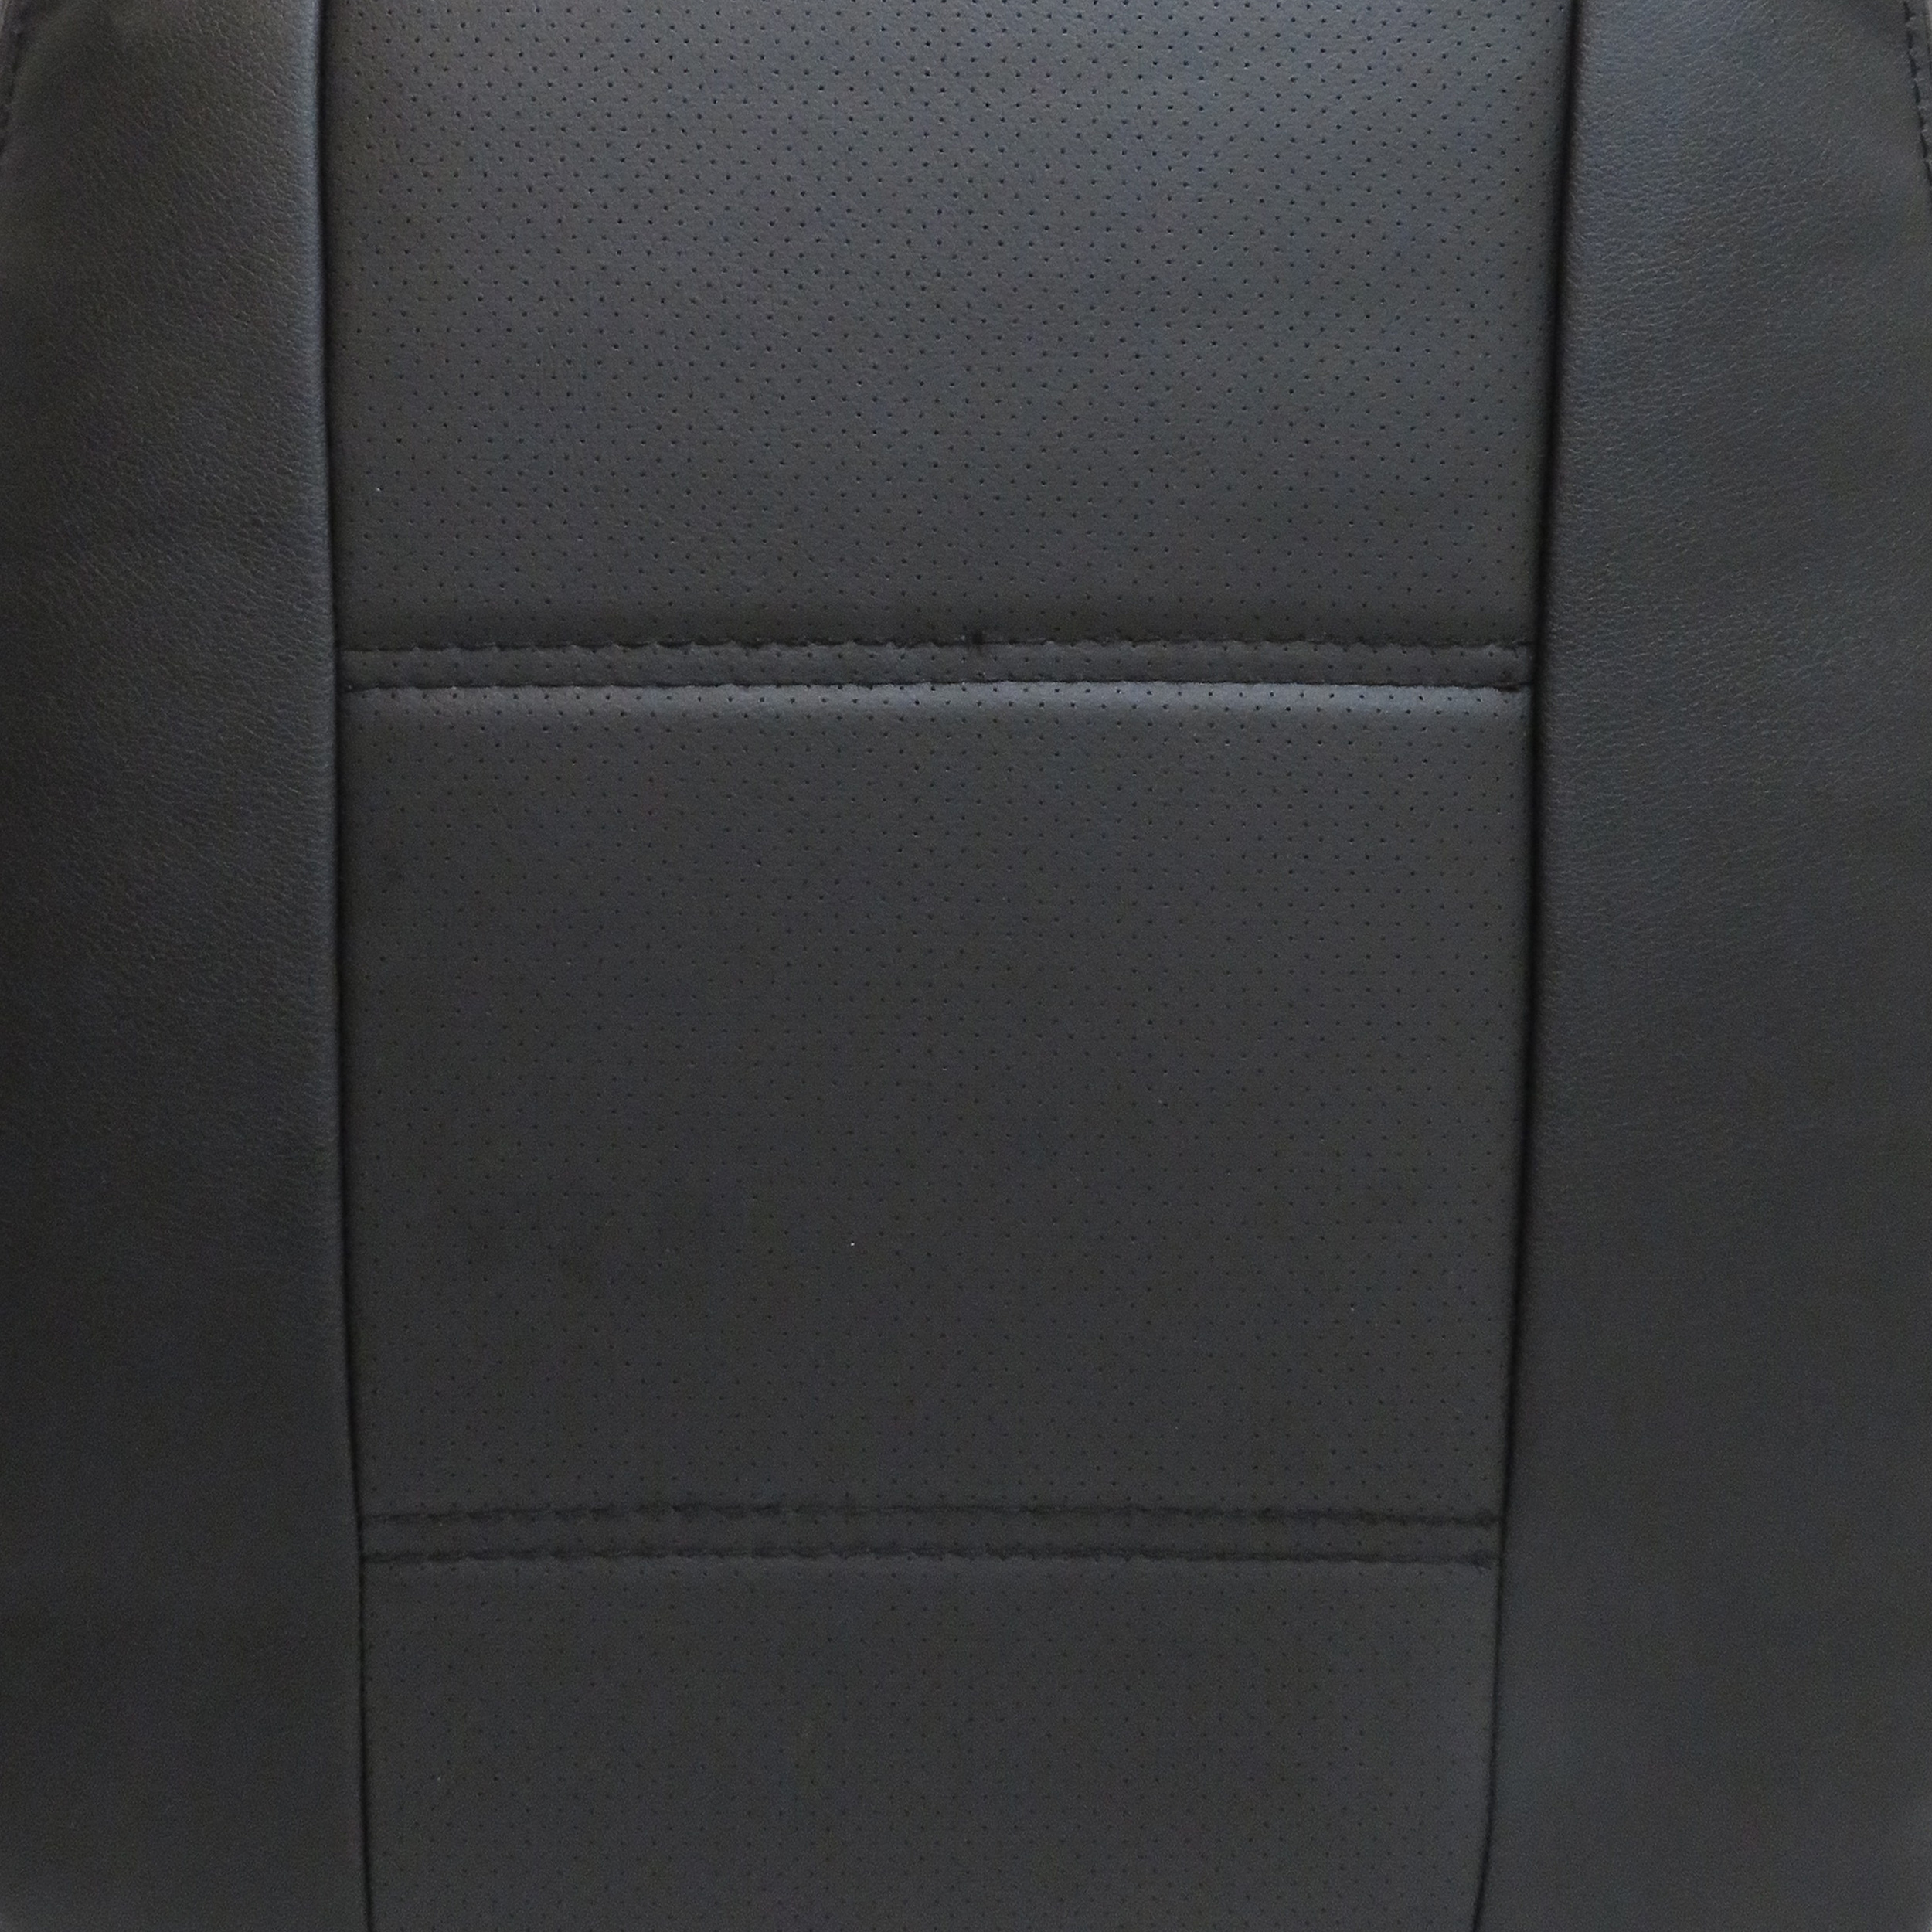 روکش صندلی خودرو مدل HT01 مناسب برای هیوندای توسان 